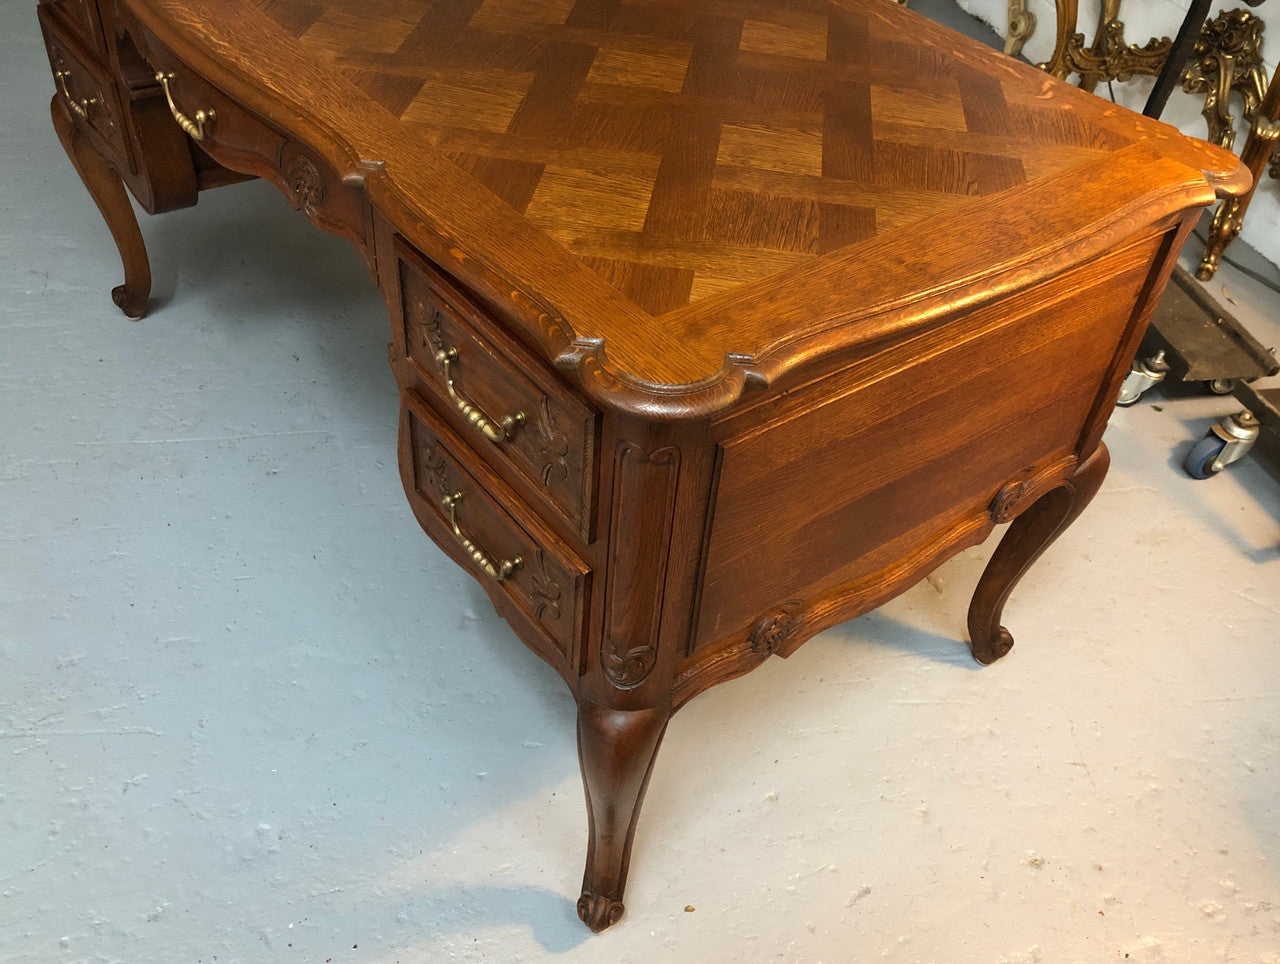 Lovely French oak Louis XVth style desk